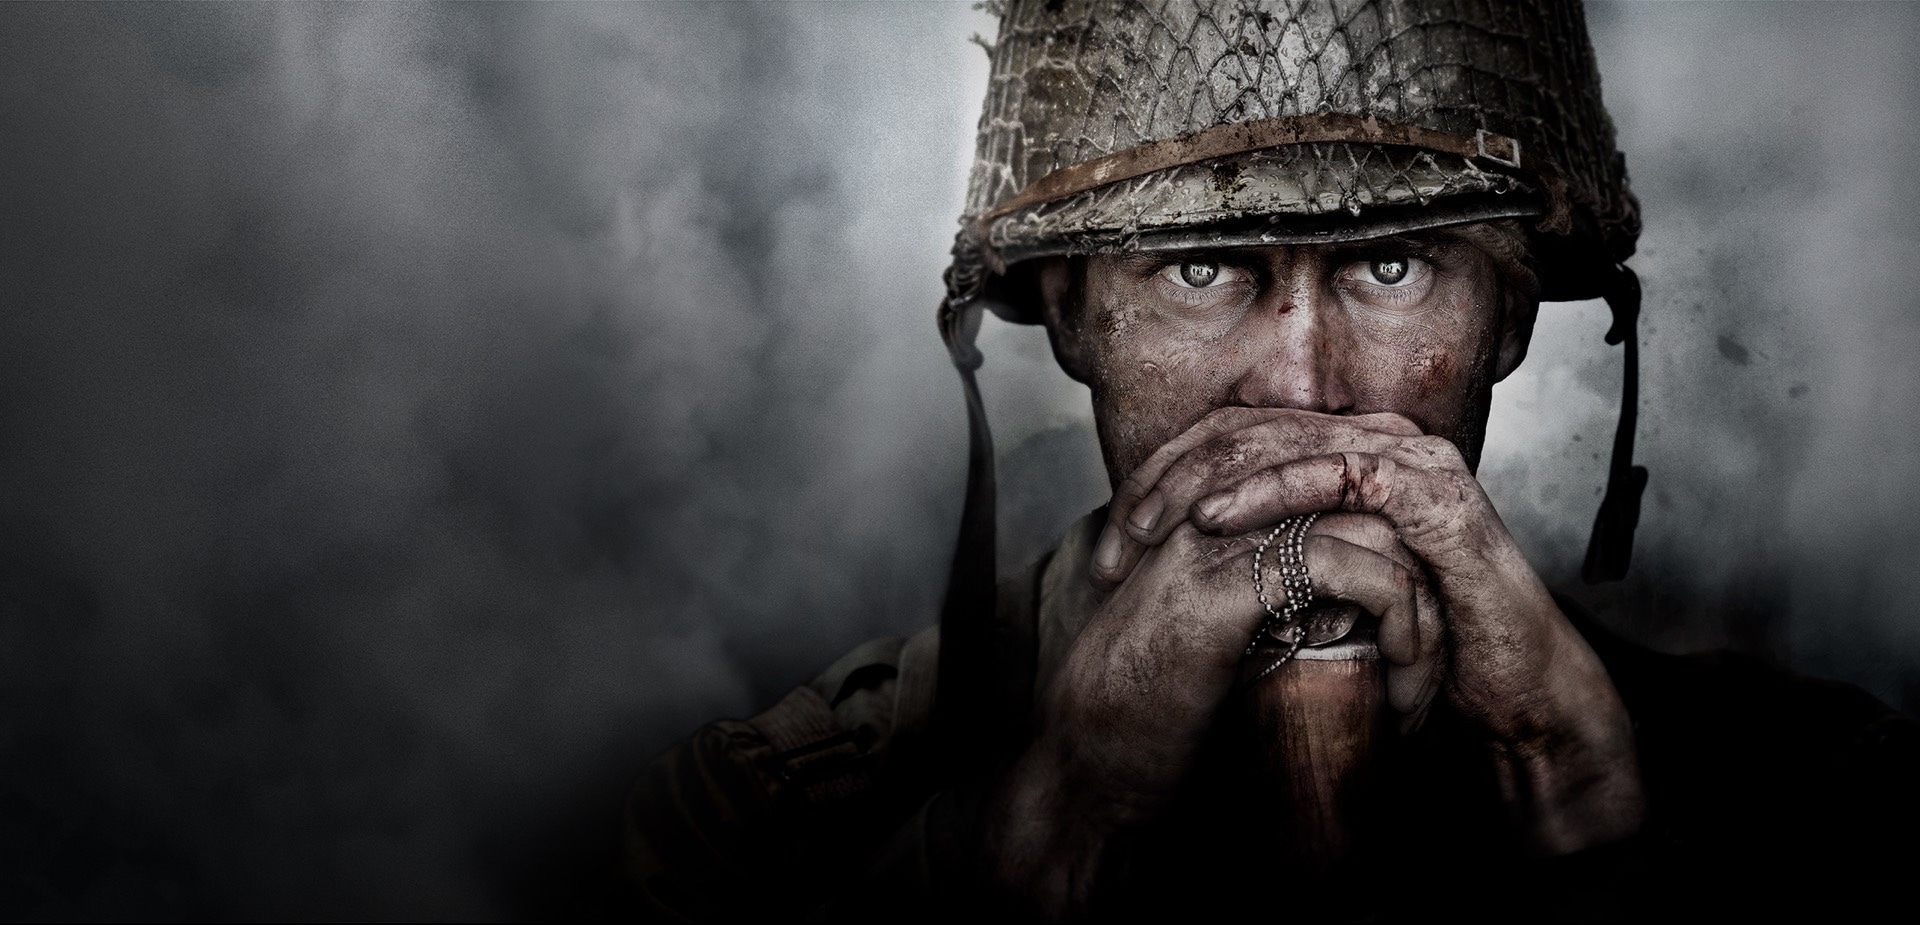 Immagine pubblicata in relazione al seguente contenuto: Partito il conto alla rovescia per la presentazione di Call of Duty: WWII | Nome immagine: news26206_Call-of-Duty-WWII_1.jpg